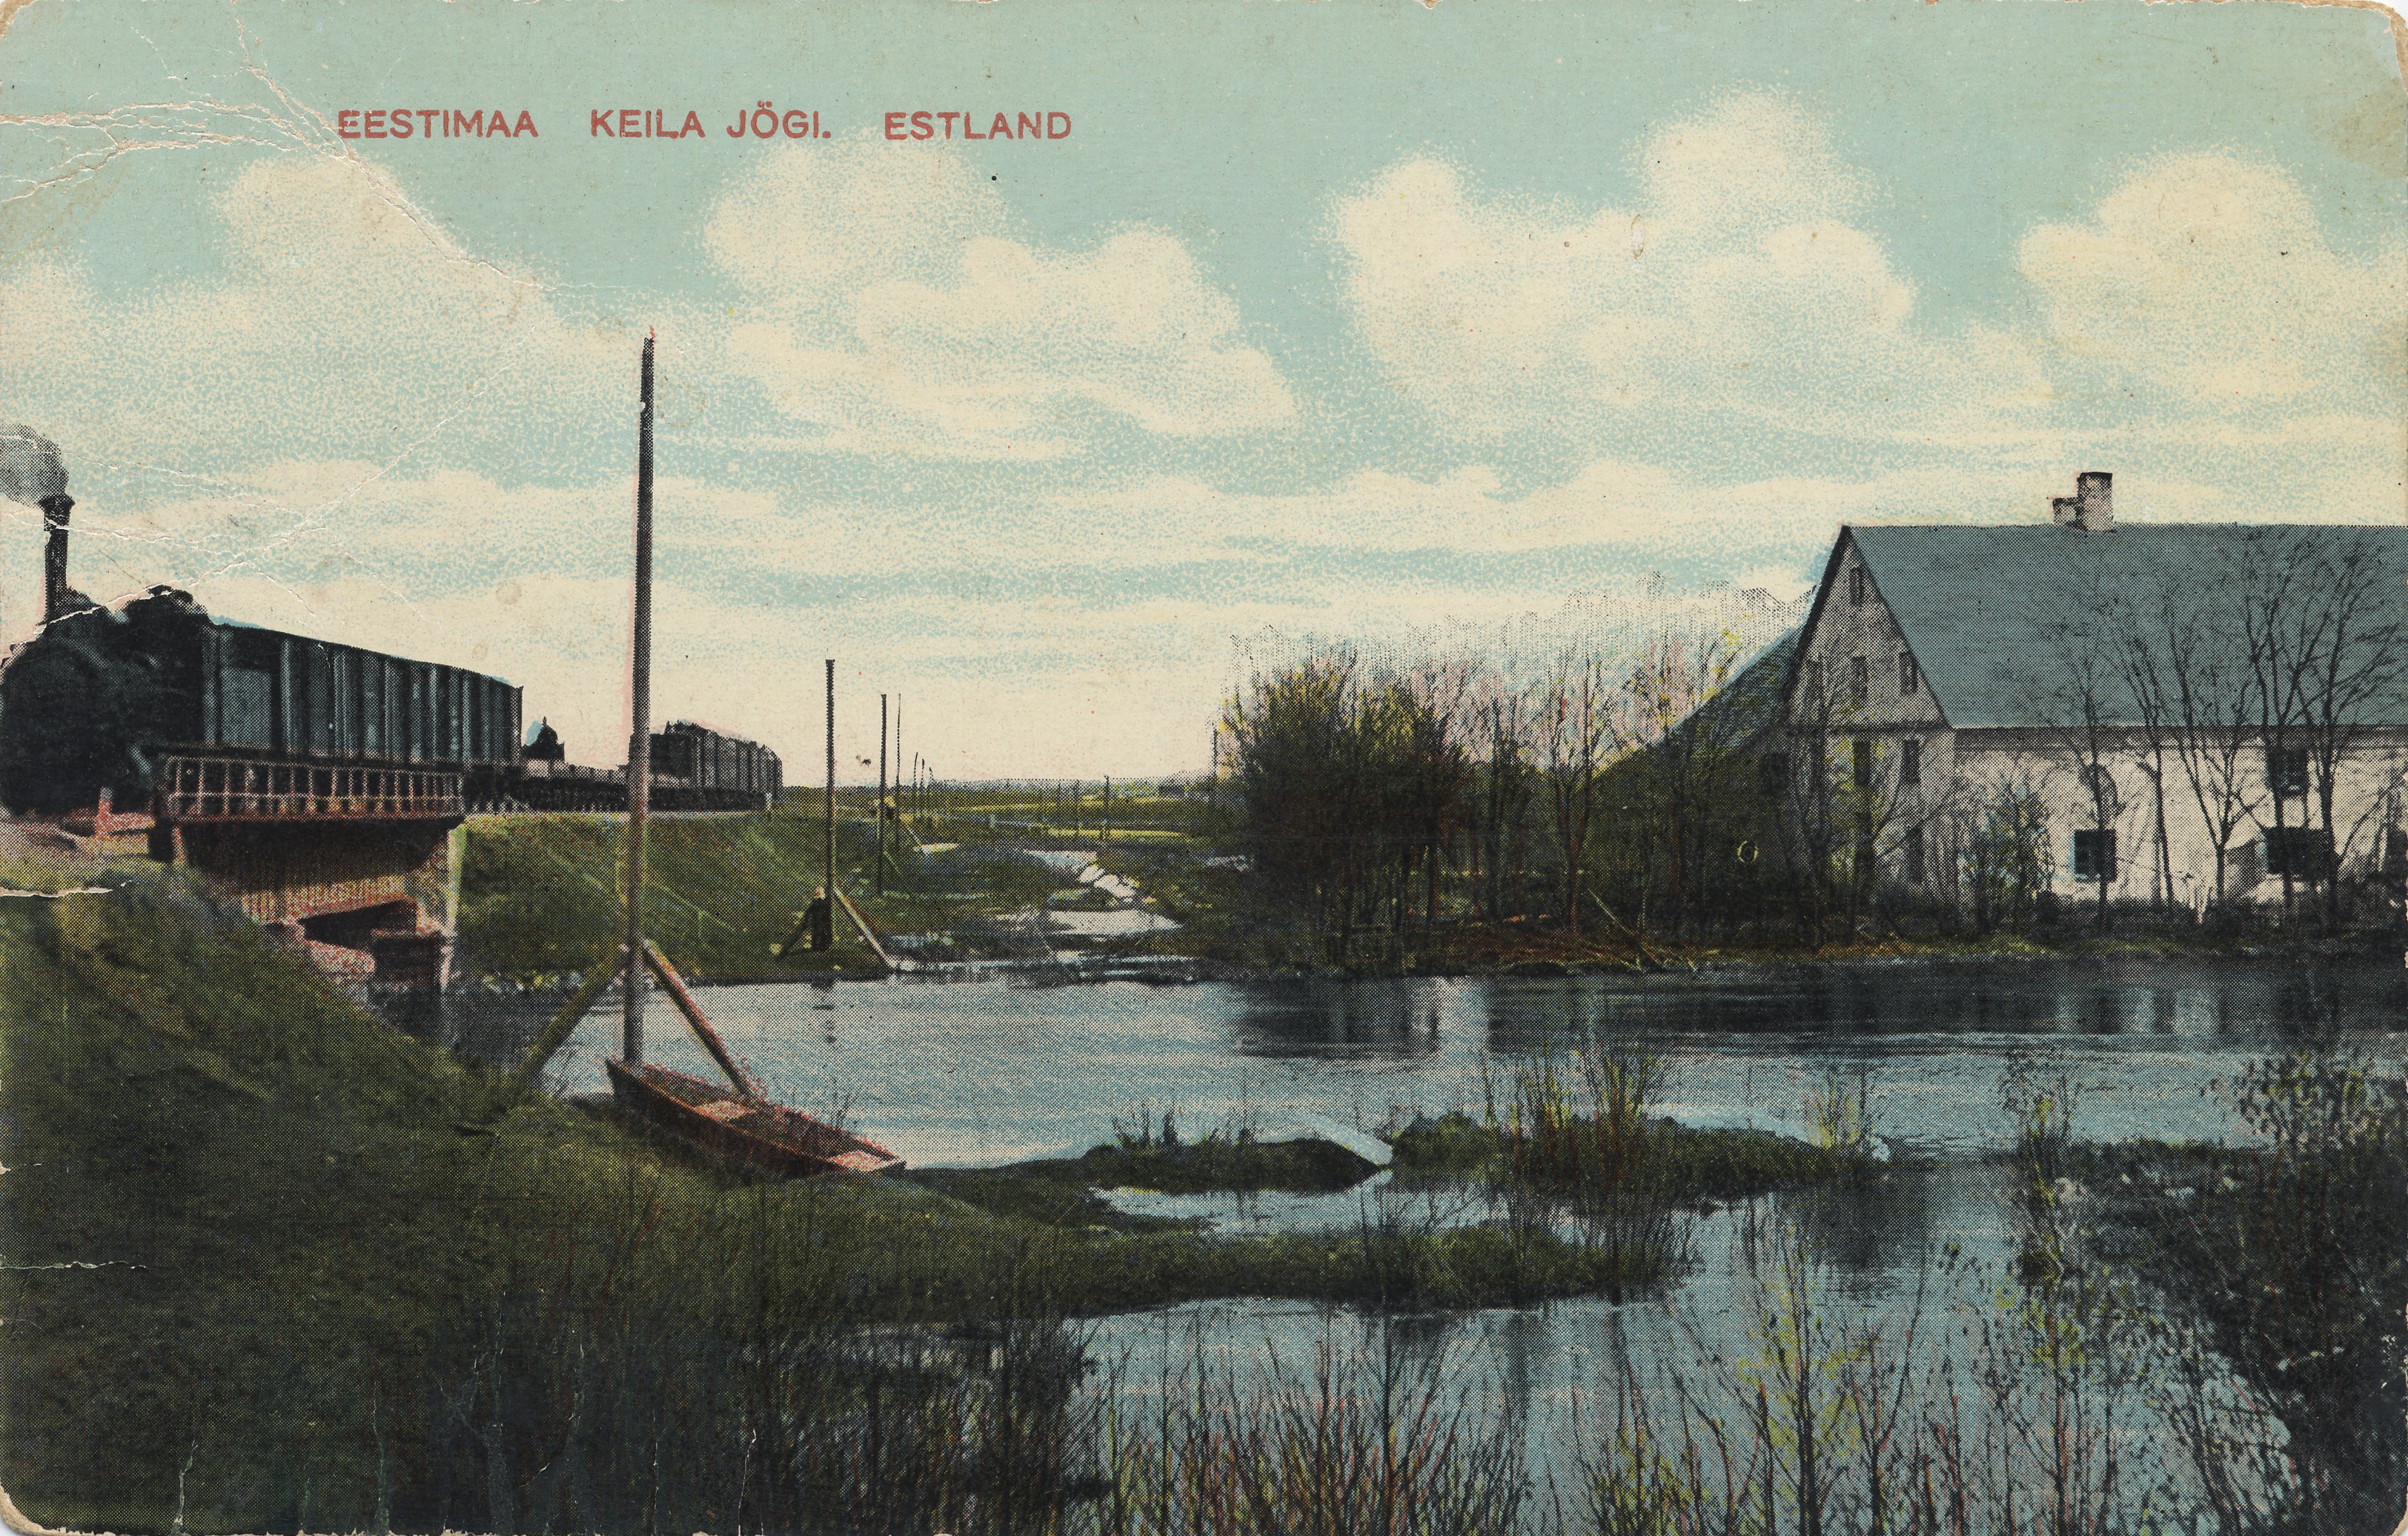 Estonia : Keila River = Estonia